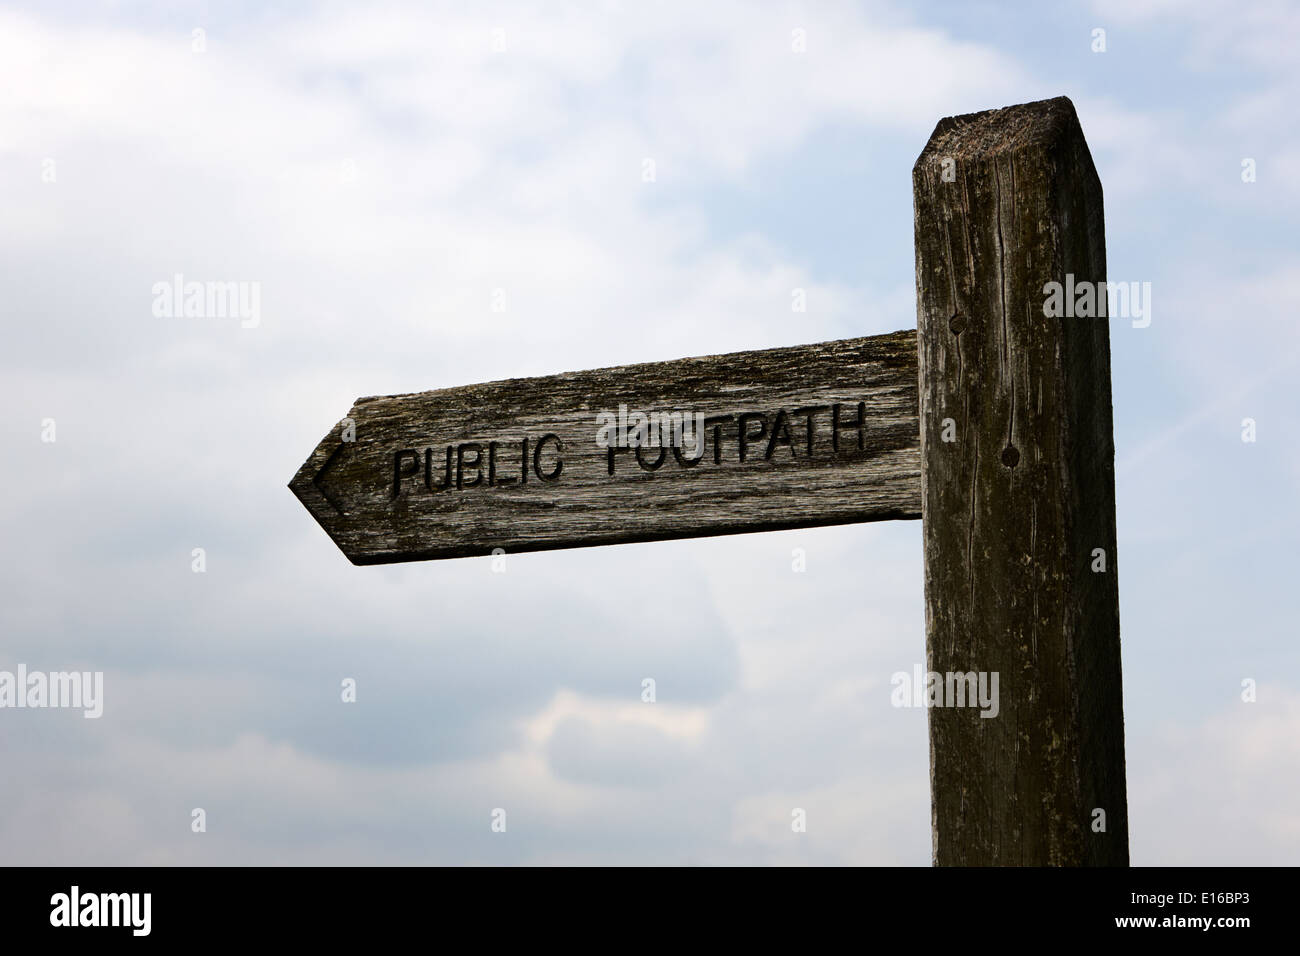 Sentier public britannique signe en bois Banque D'Images